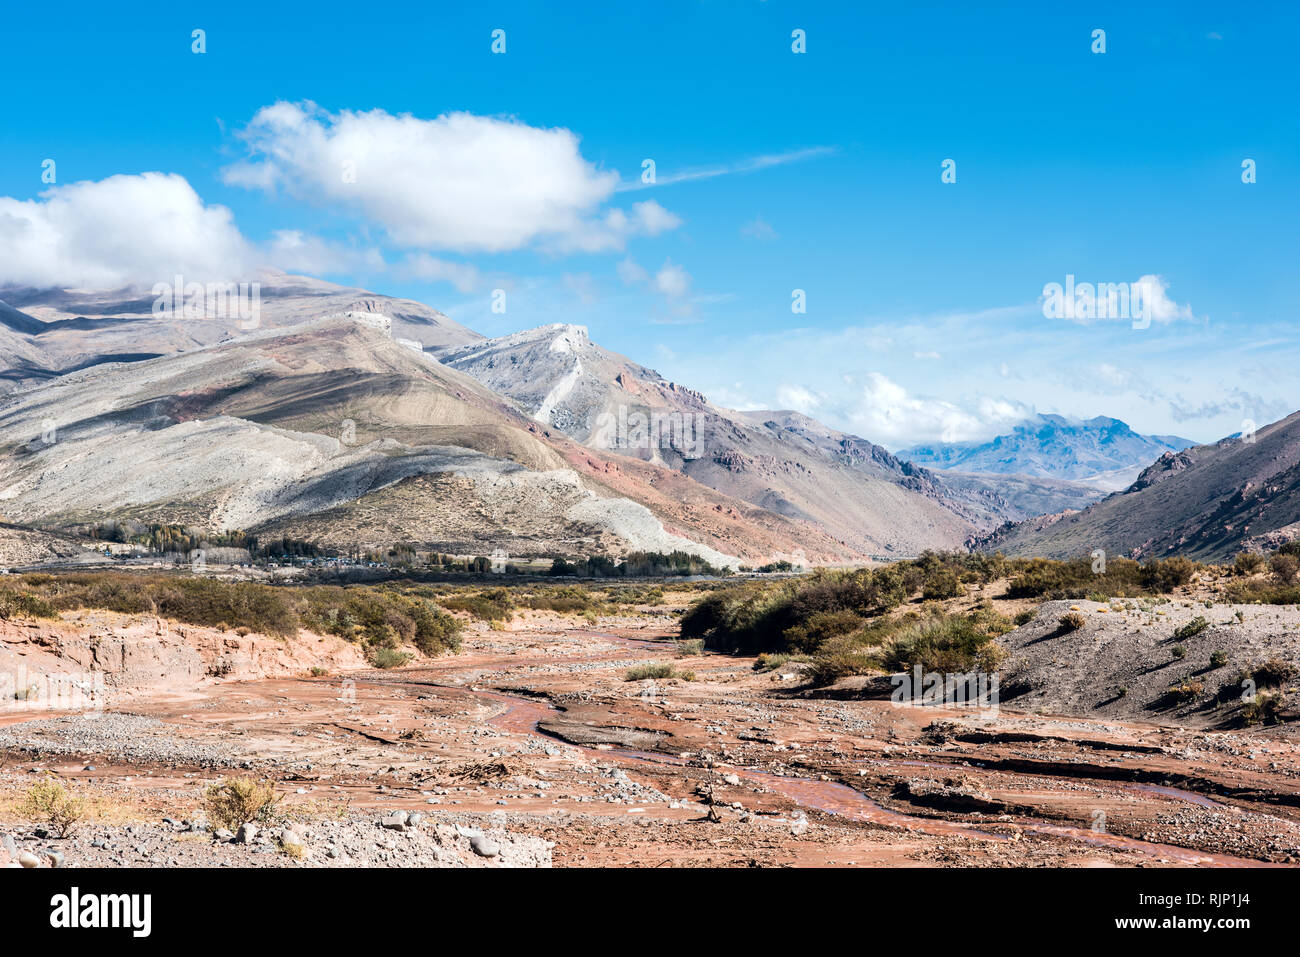 Les roches sédimentaires en couches dans la vallée pittoresque du Rio Grande (espagnol pour "Grand fleuve"), au sud de la Province de Mendoza, Argentine Banque D'Images